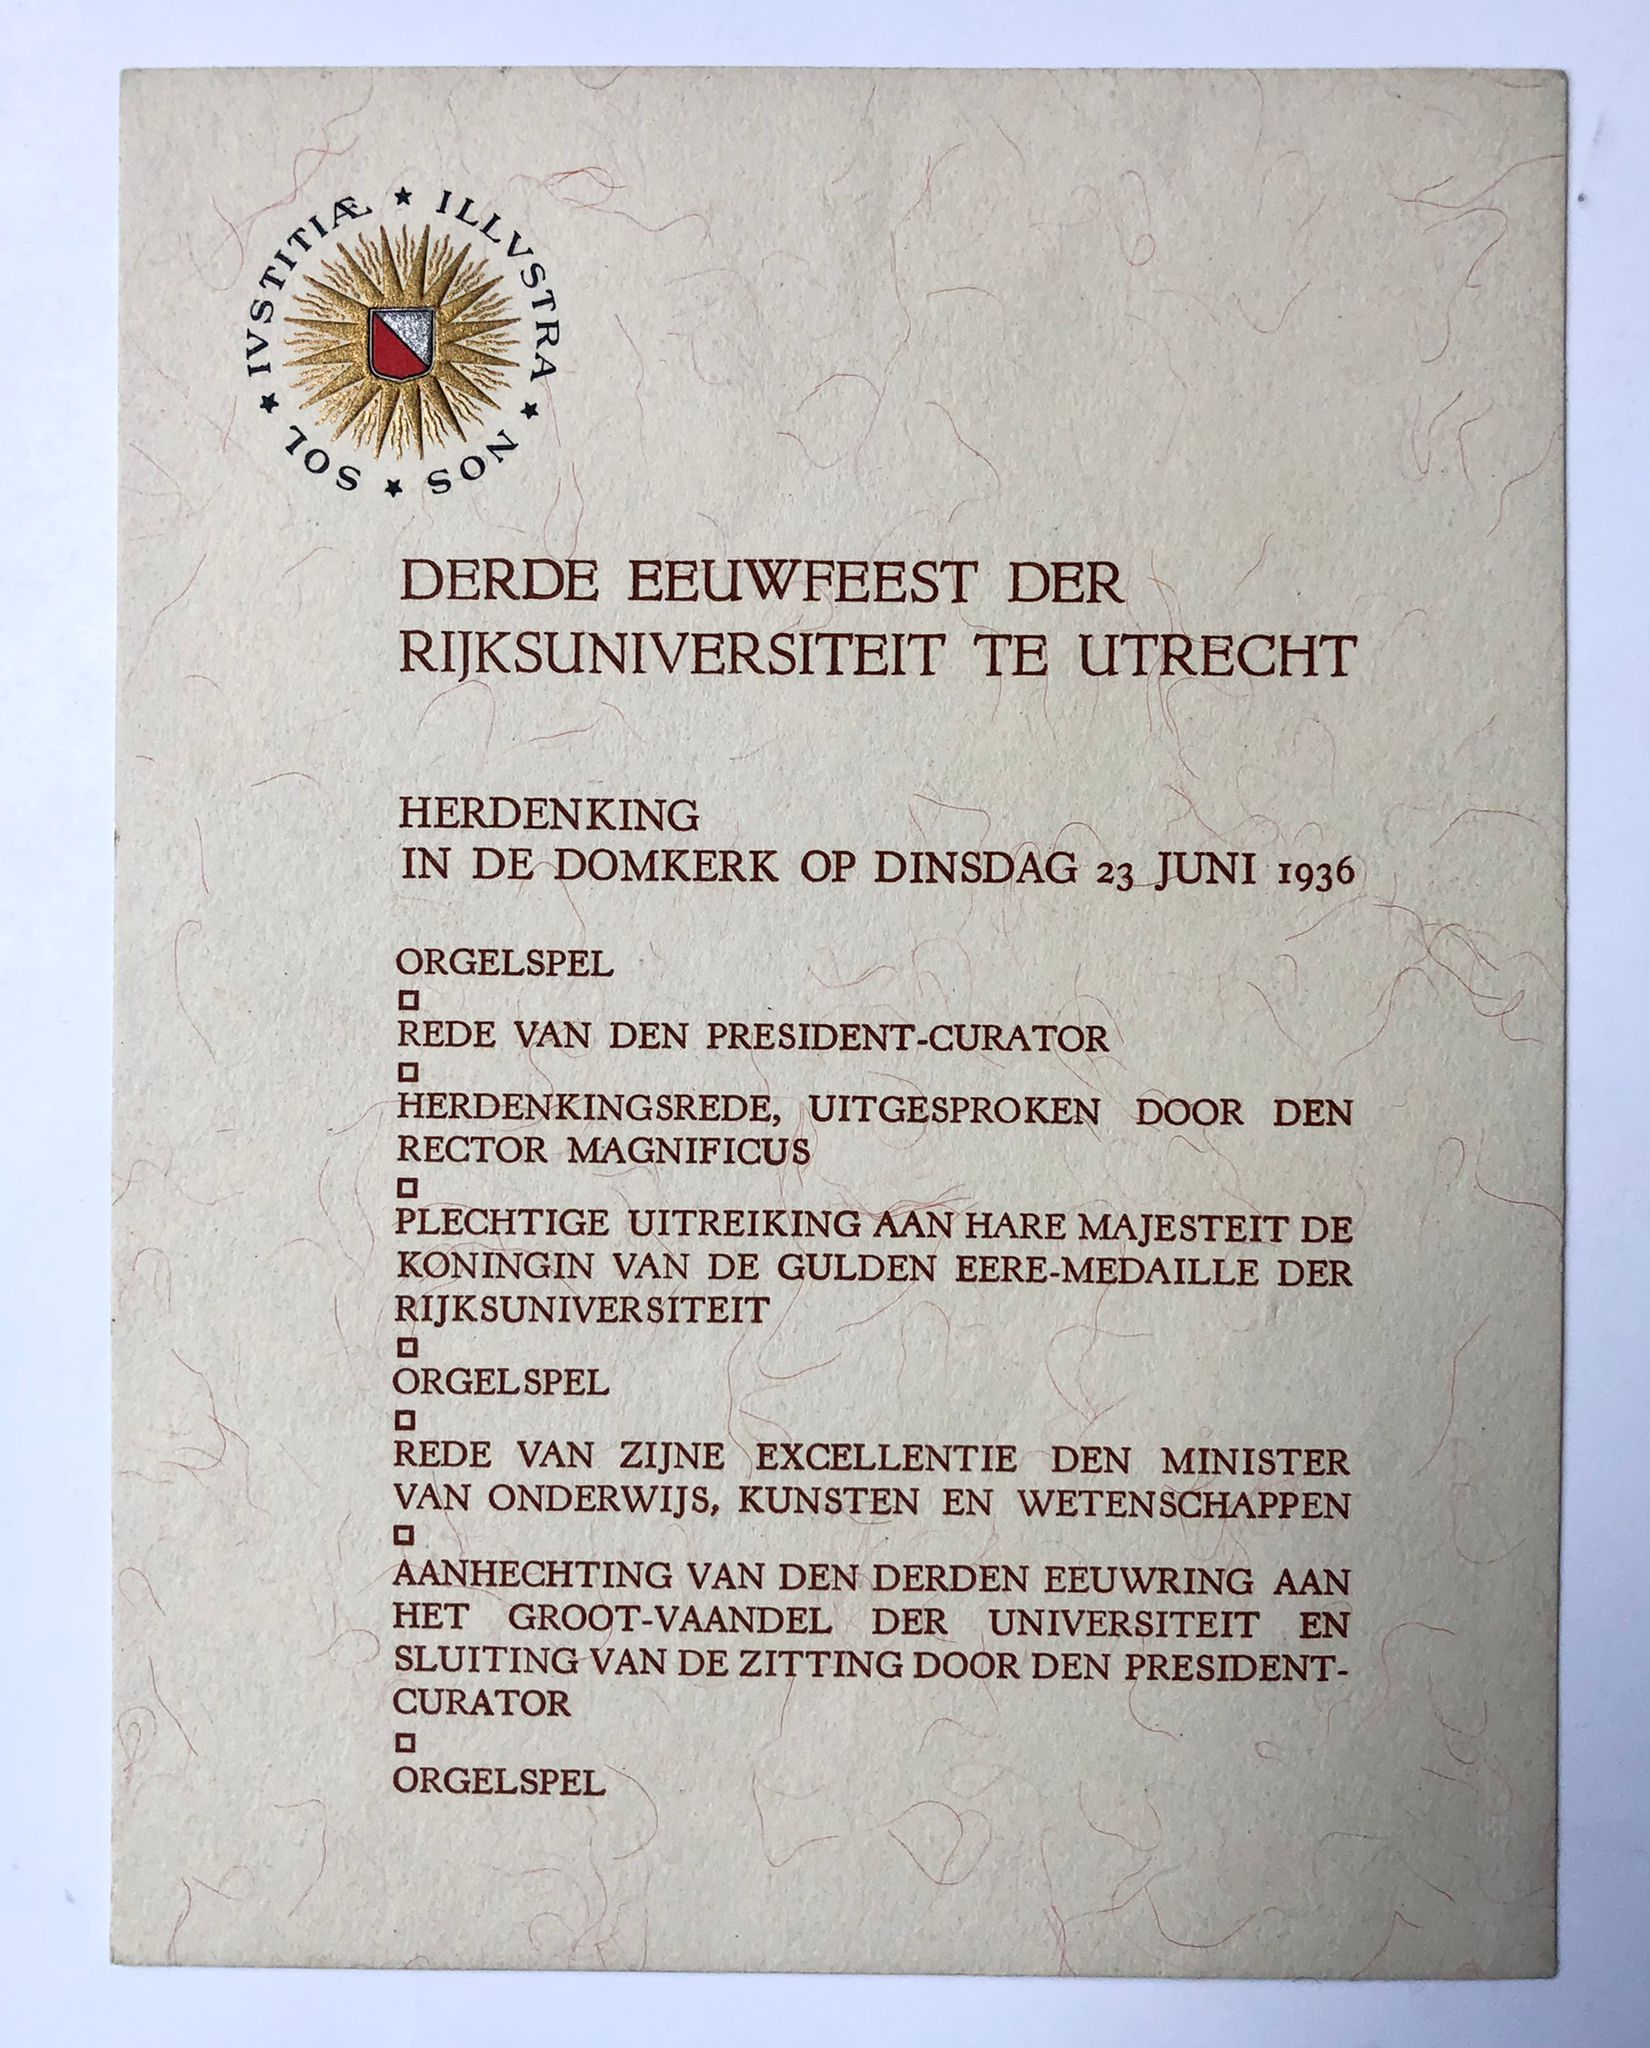 [University Utrecht, celebration, 1936] Programma en toegangsbewijs voor derde eeuwfeest Rijksuniversiteit Utrecht, 23-6-1936. Gedrukt, 3 pag.